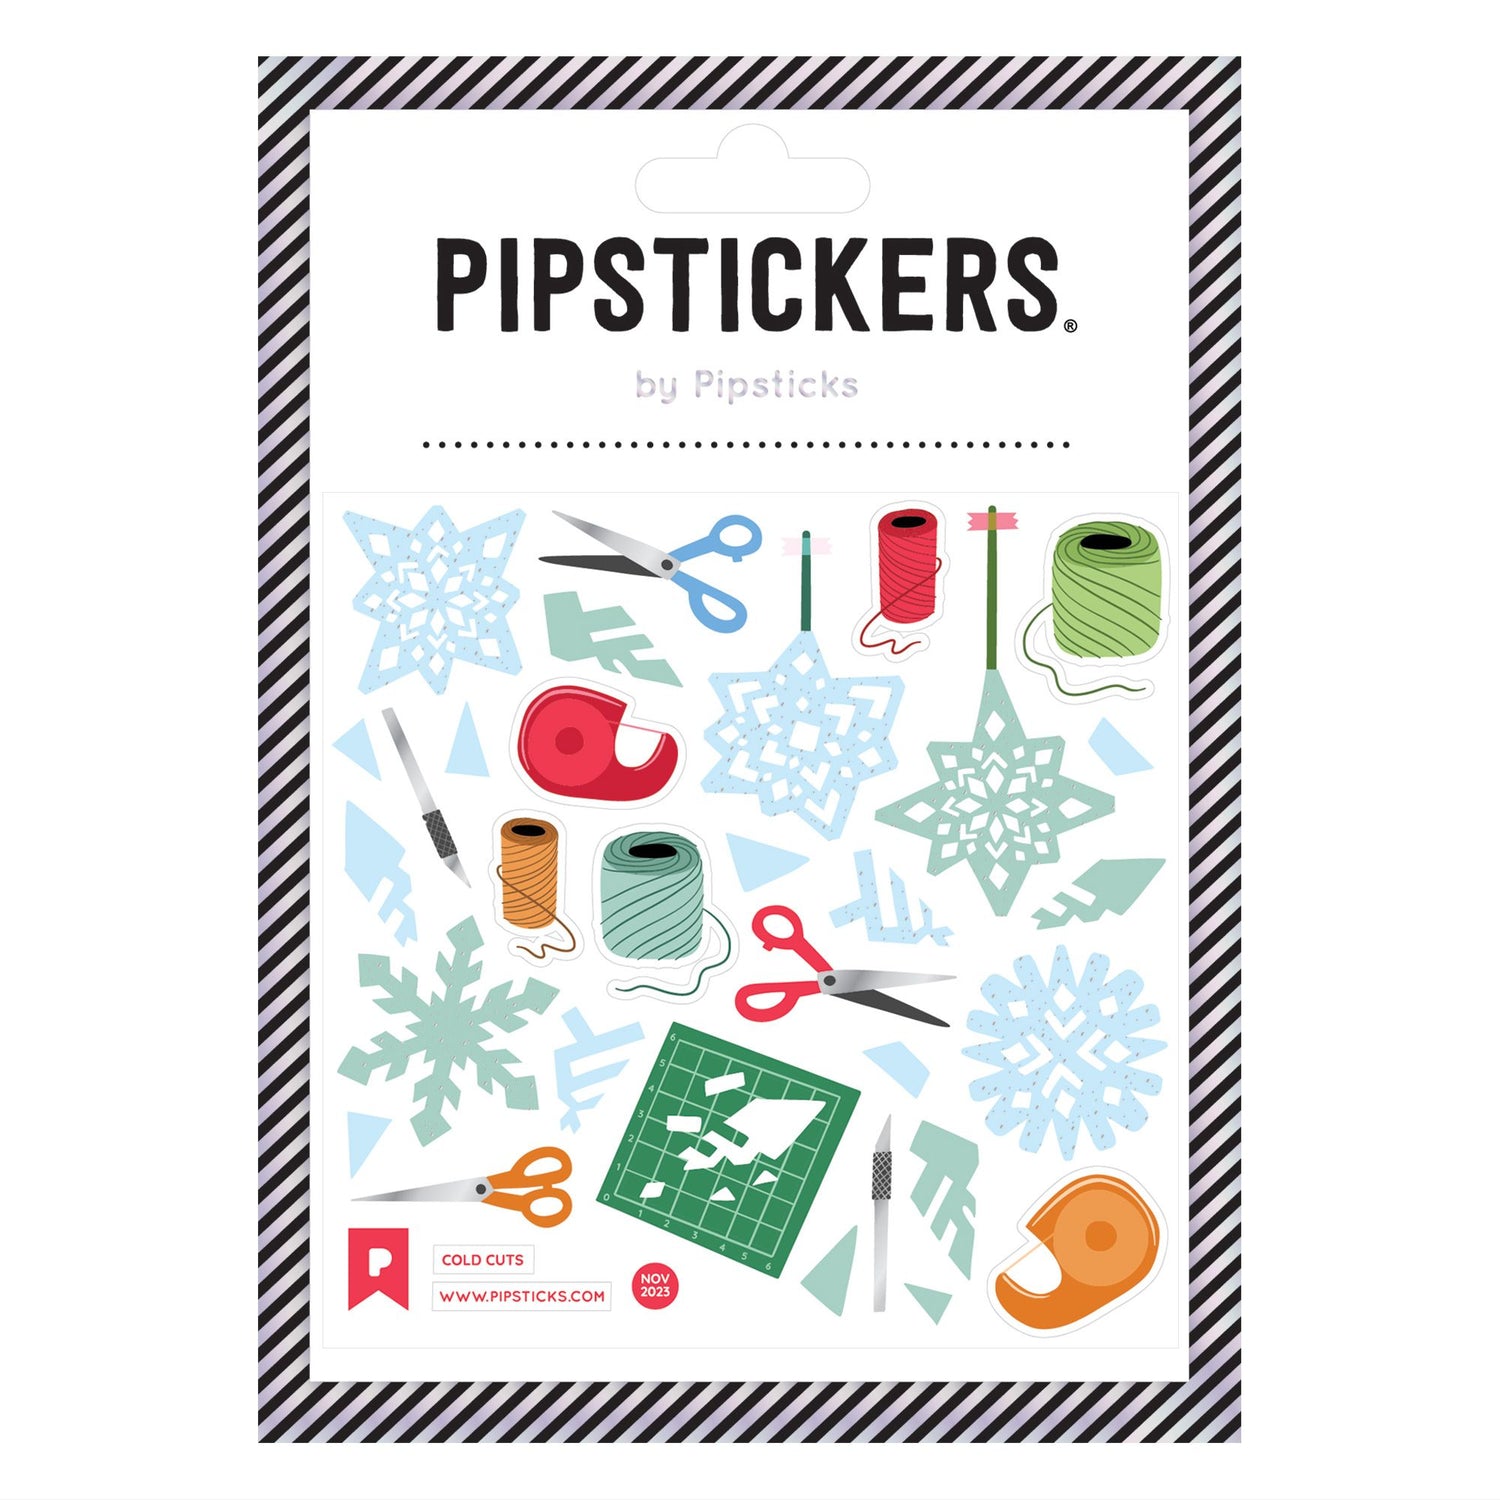 Pipsticks - Fuzzy Snowflakes Sticker - 852406939022